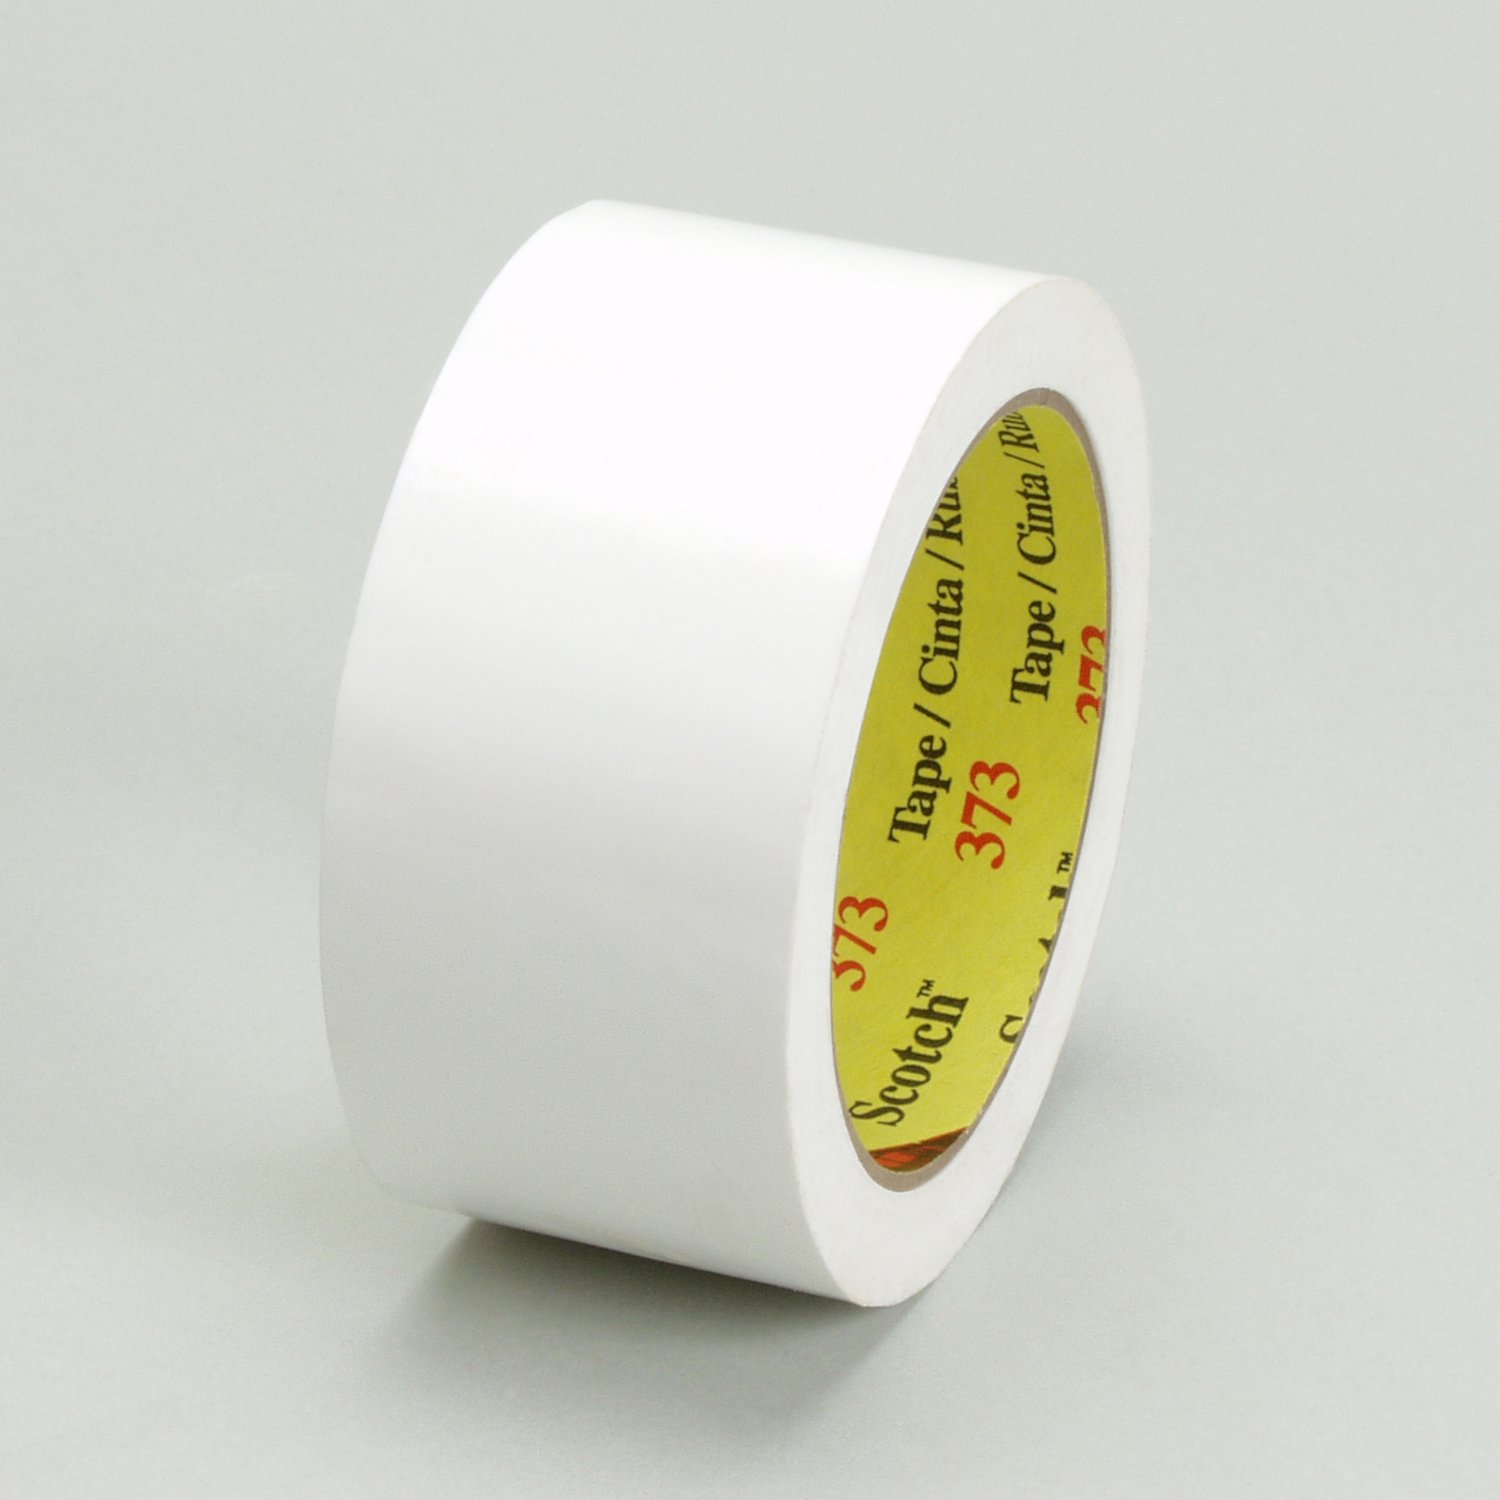 7100043552 - Scotch Box Sealing Tape 373, White, 72 mm x 50 m, 24/Case